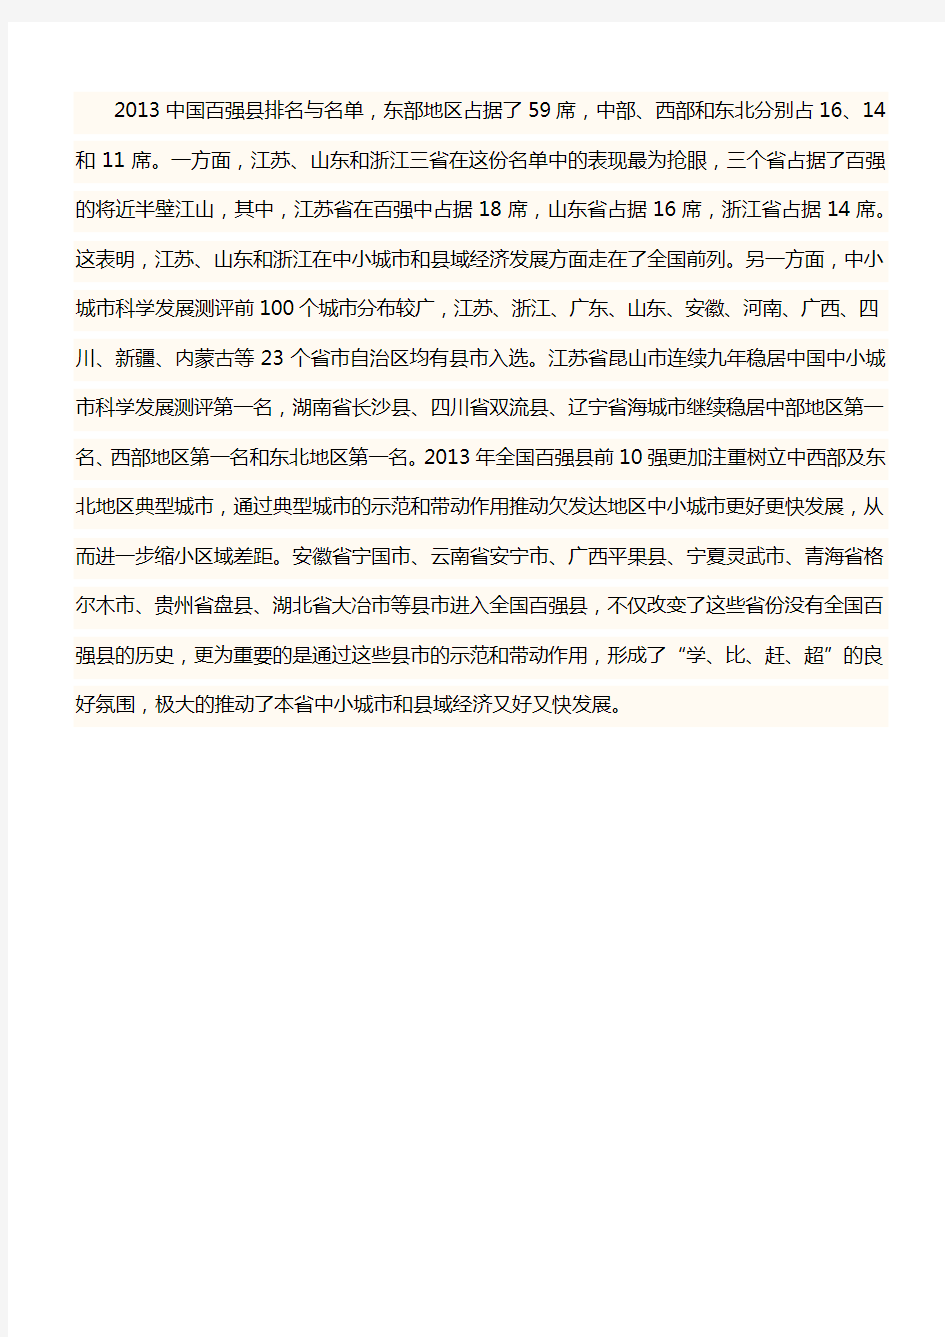 2013中国百强县排名与名单